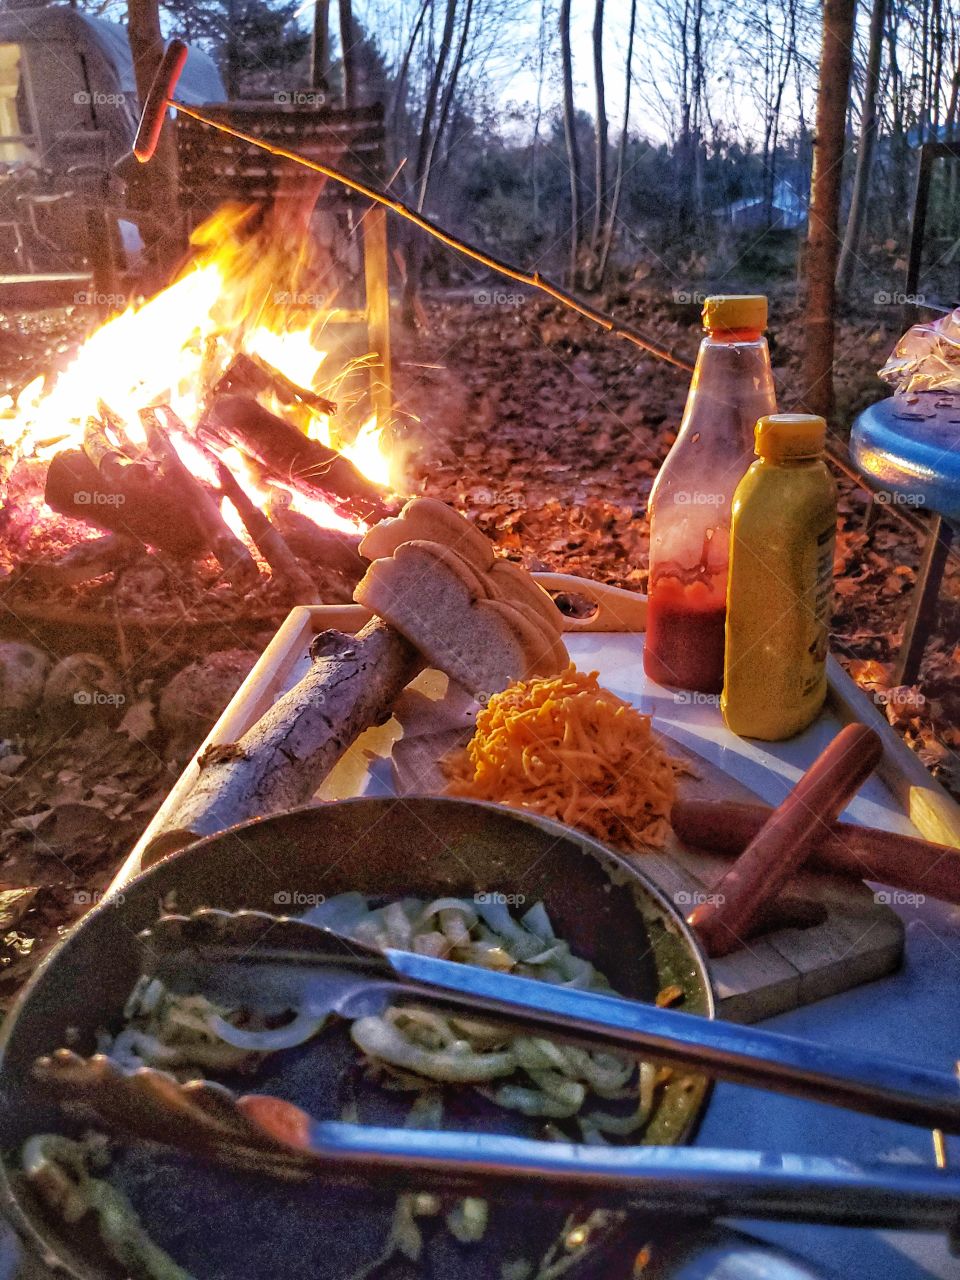 Fireside hotdogs.